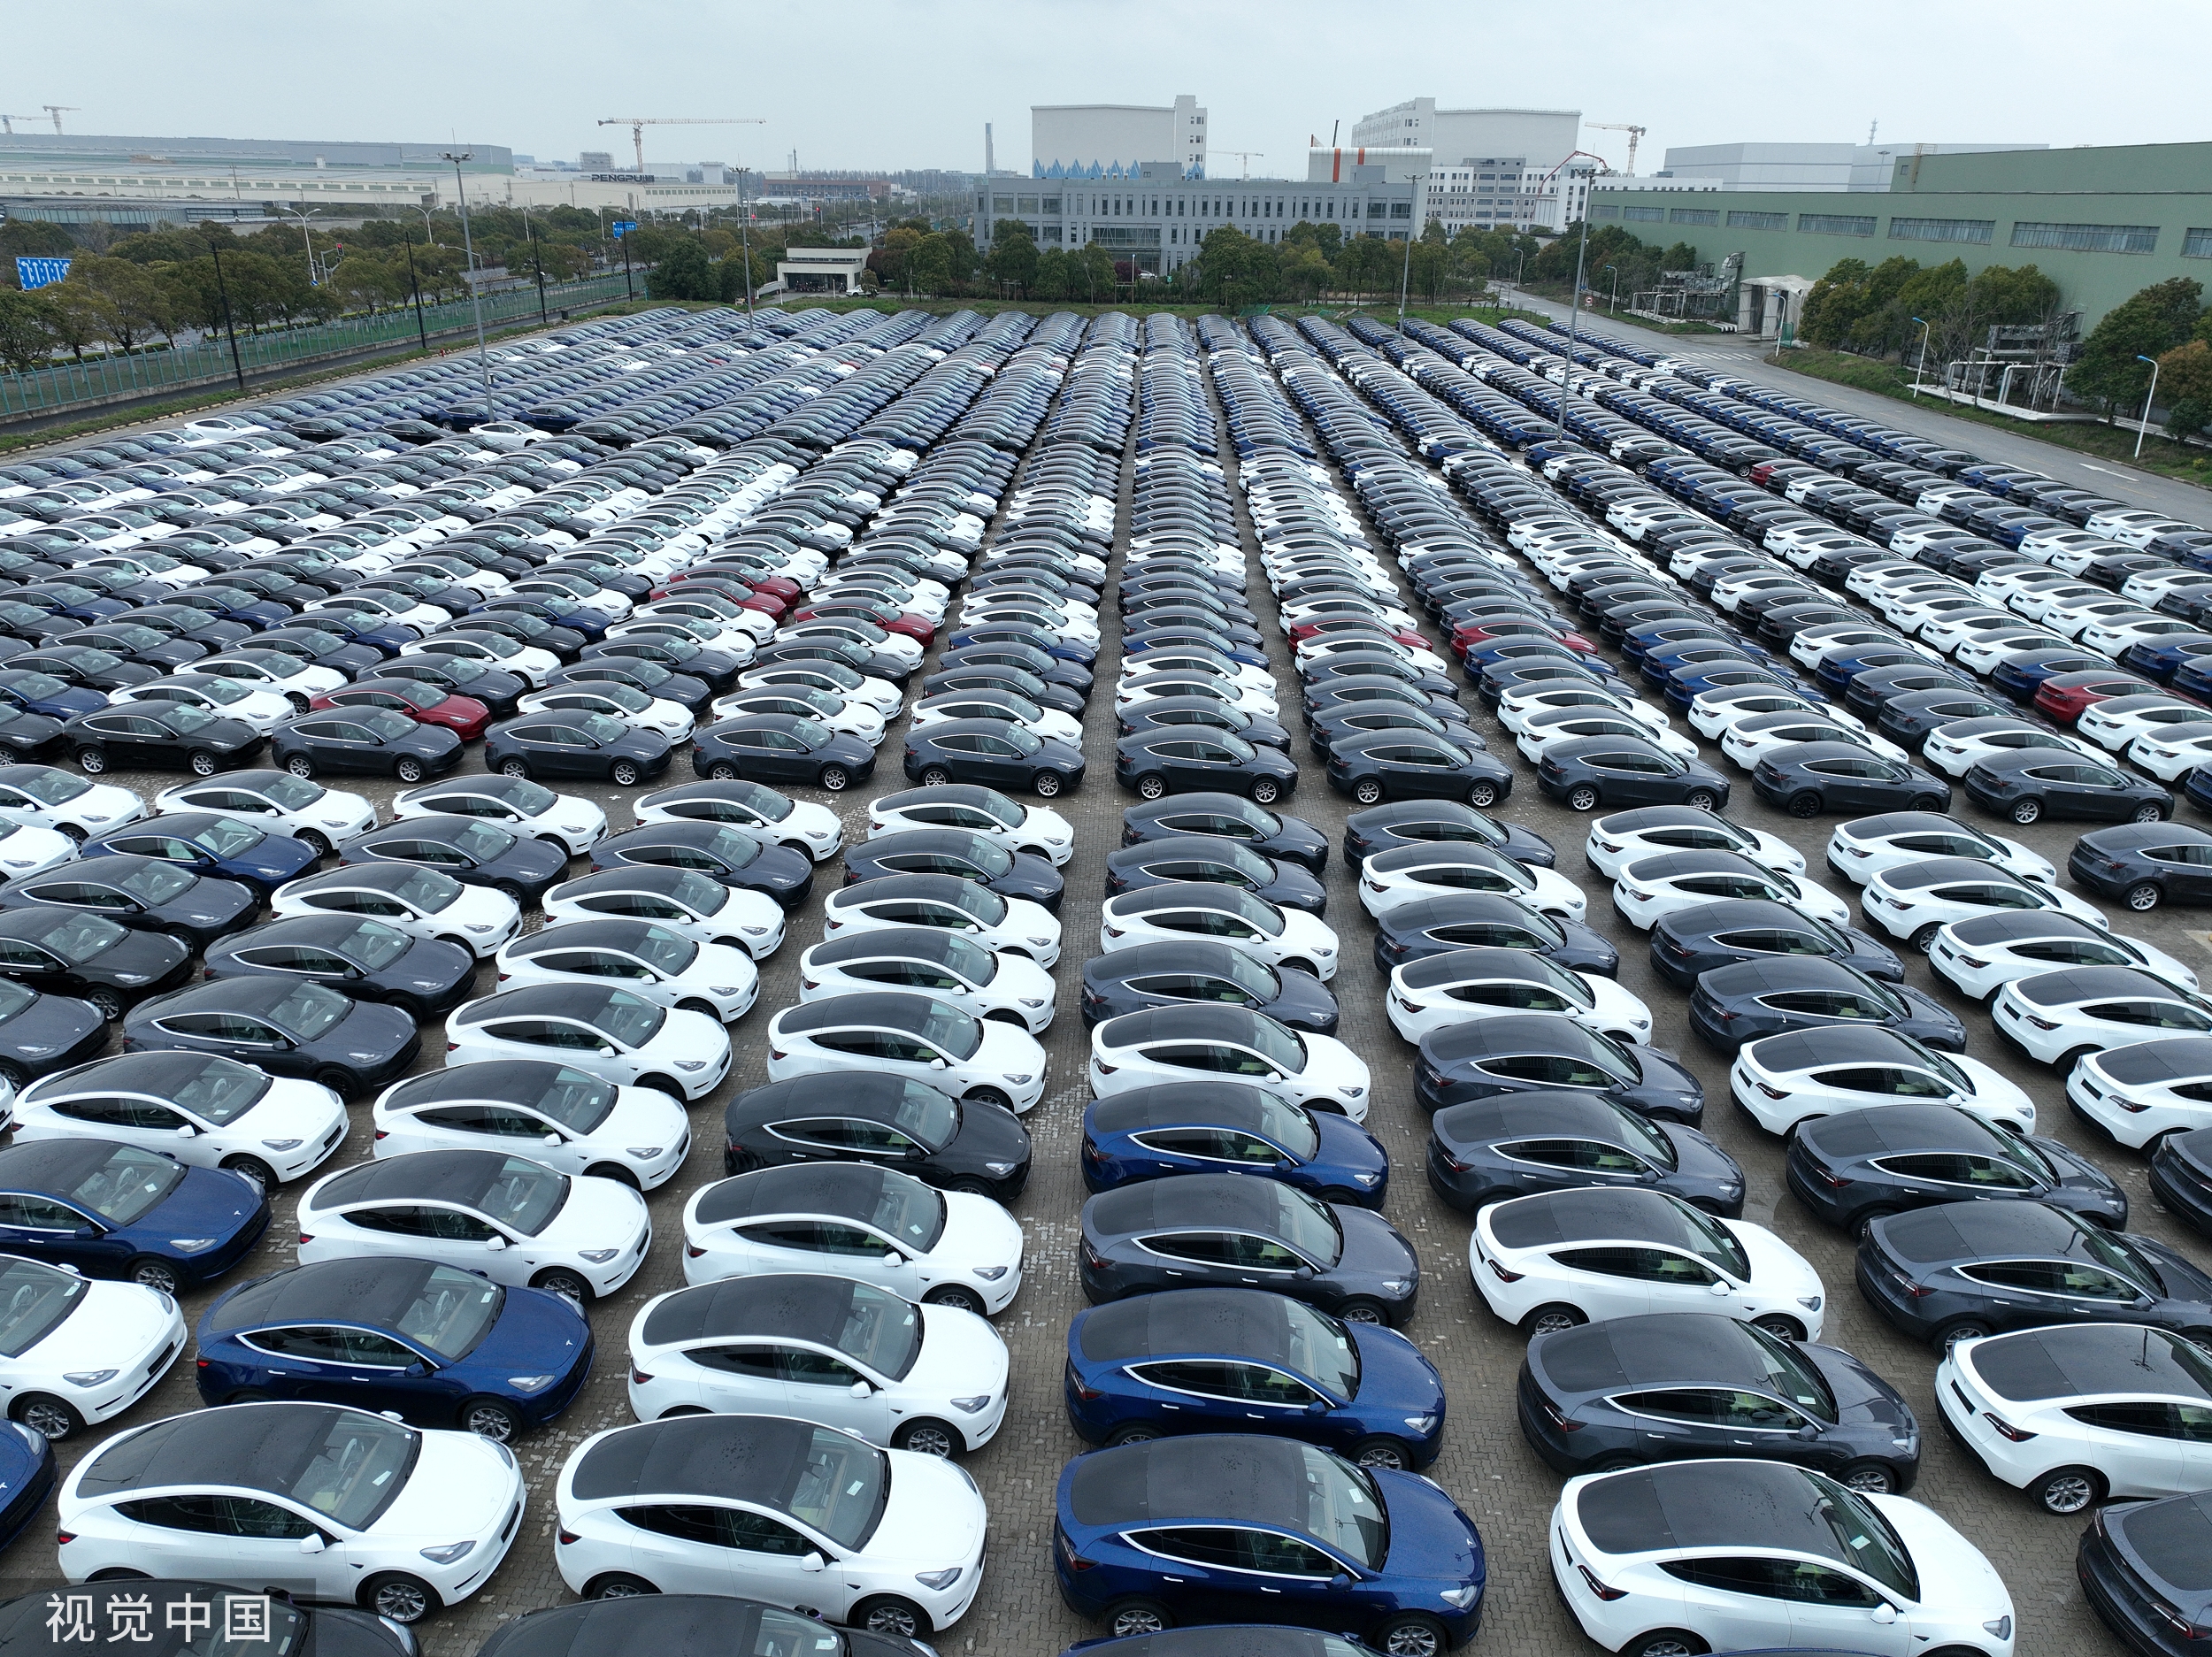 Αυτοκινητοβιομηχανίες: Οι ξένες εταιρείες στην Κίνα αντιμετωπίζουν μια «ολοένα και πιο επισφαλή» θέση